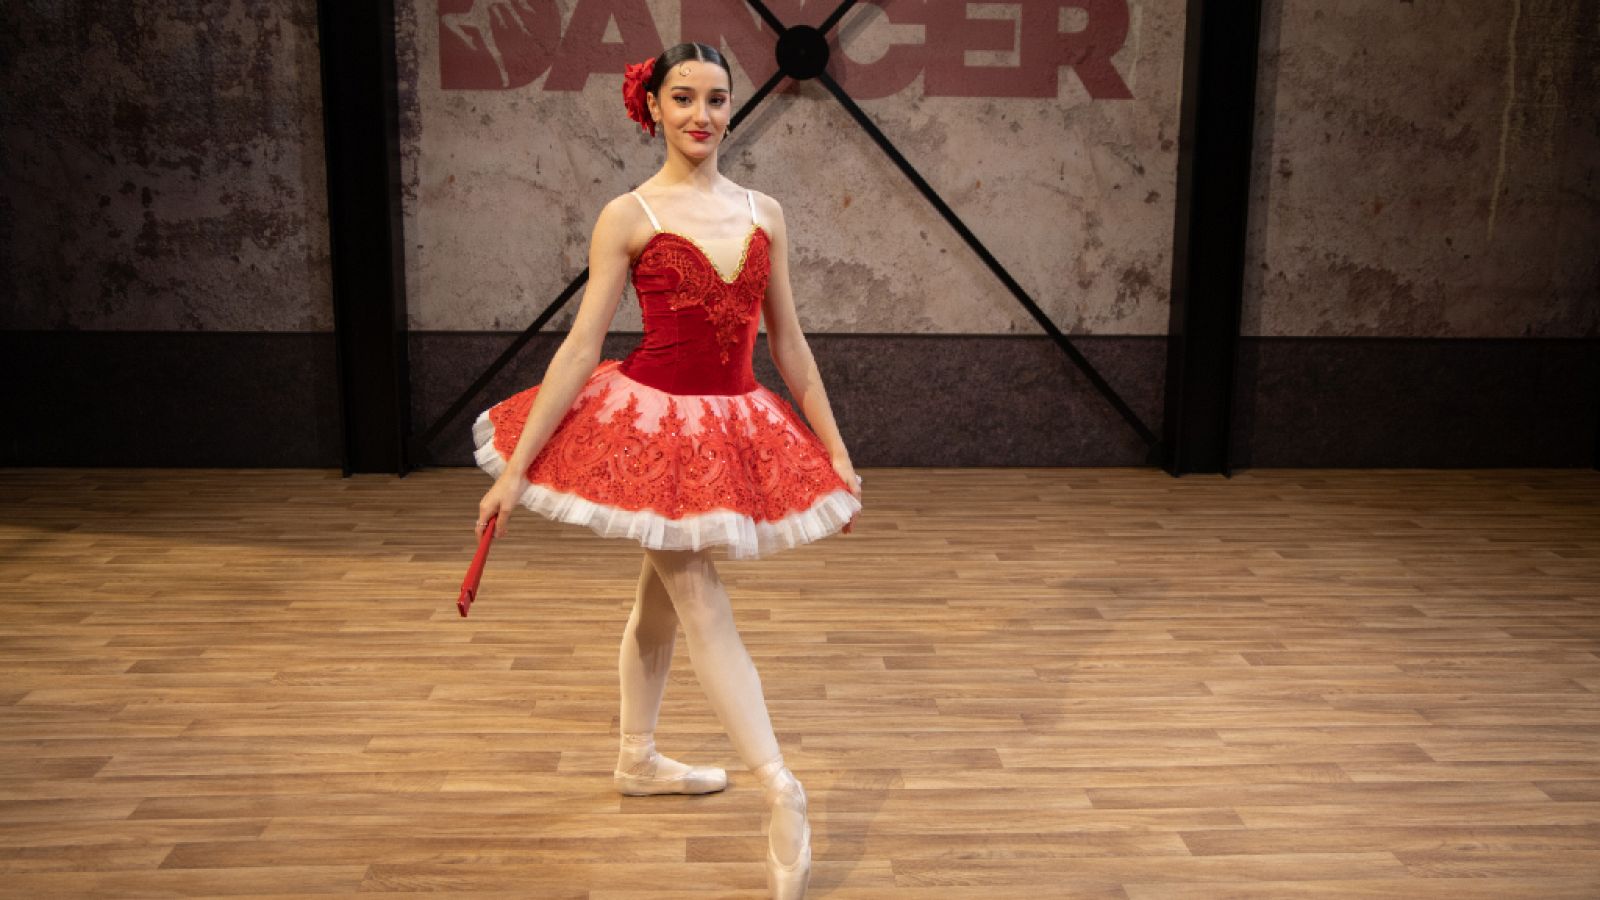 The Dancer - Actuación completa de Irene Estévez